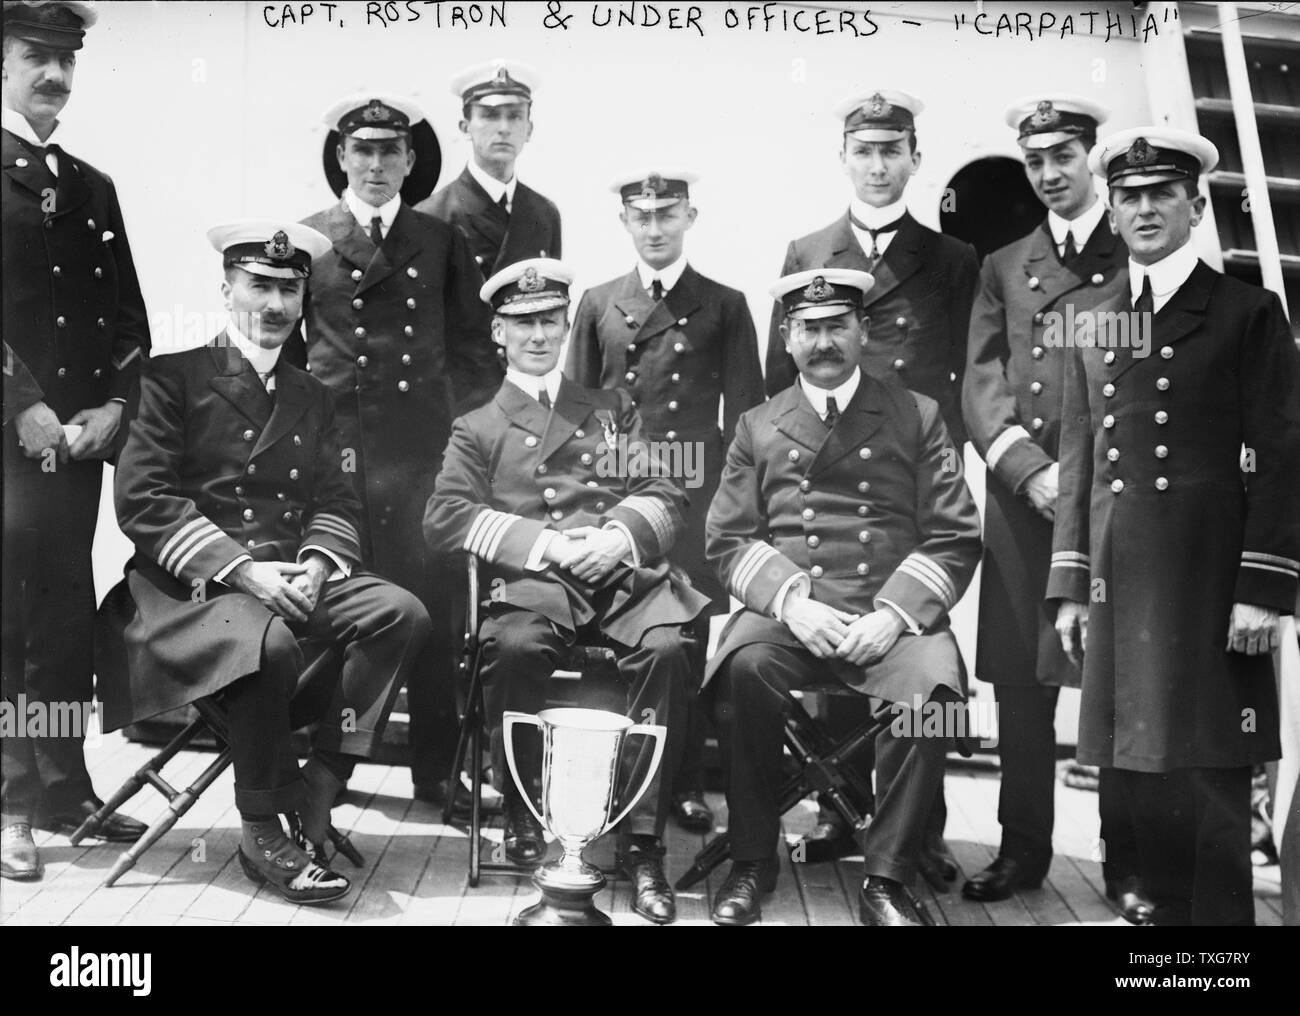 Le capitaine Arthur Rostron, encadrées par des officiers de RMS Carpathia (Cunard), avec coupe d'amour qui lui a été présenté par des survivants du naufrage du RMS Titanic (White Star Line), 12 avril 1912 en reconnaissance de son héroïsme dans le sauvetage. Catastrophe naufrage Banque D'Images